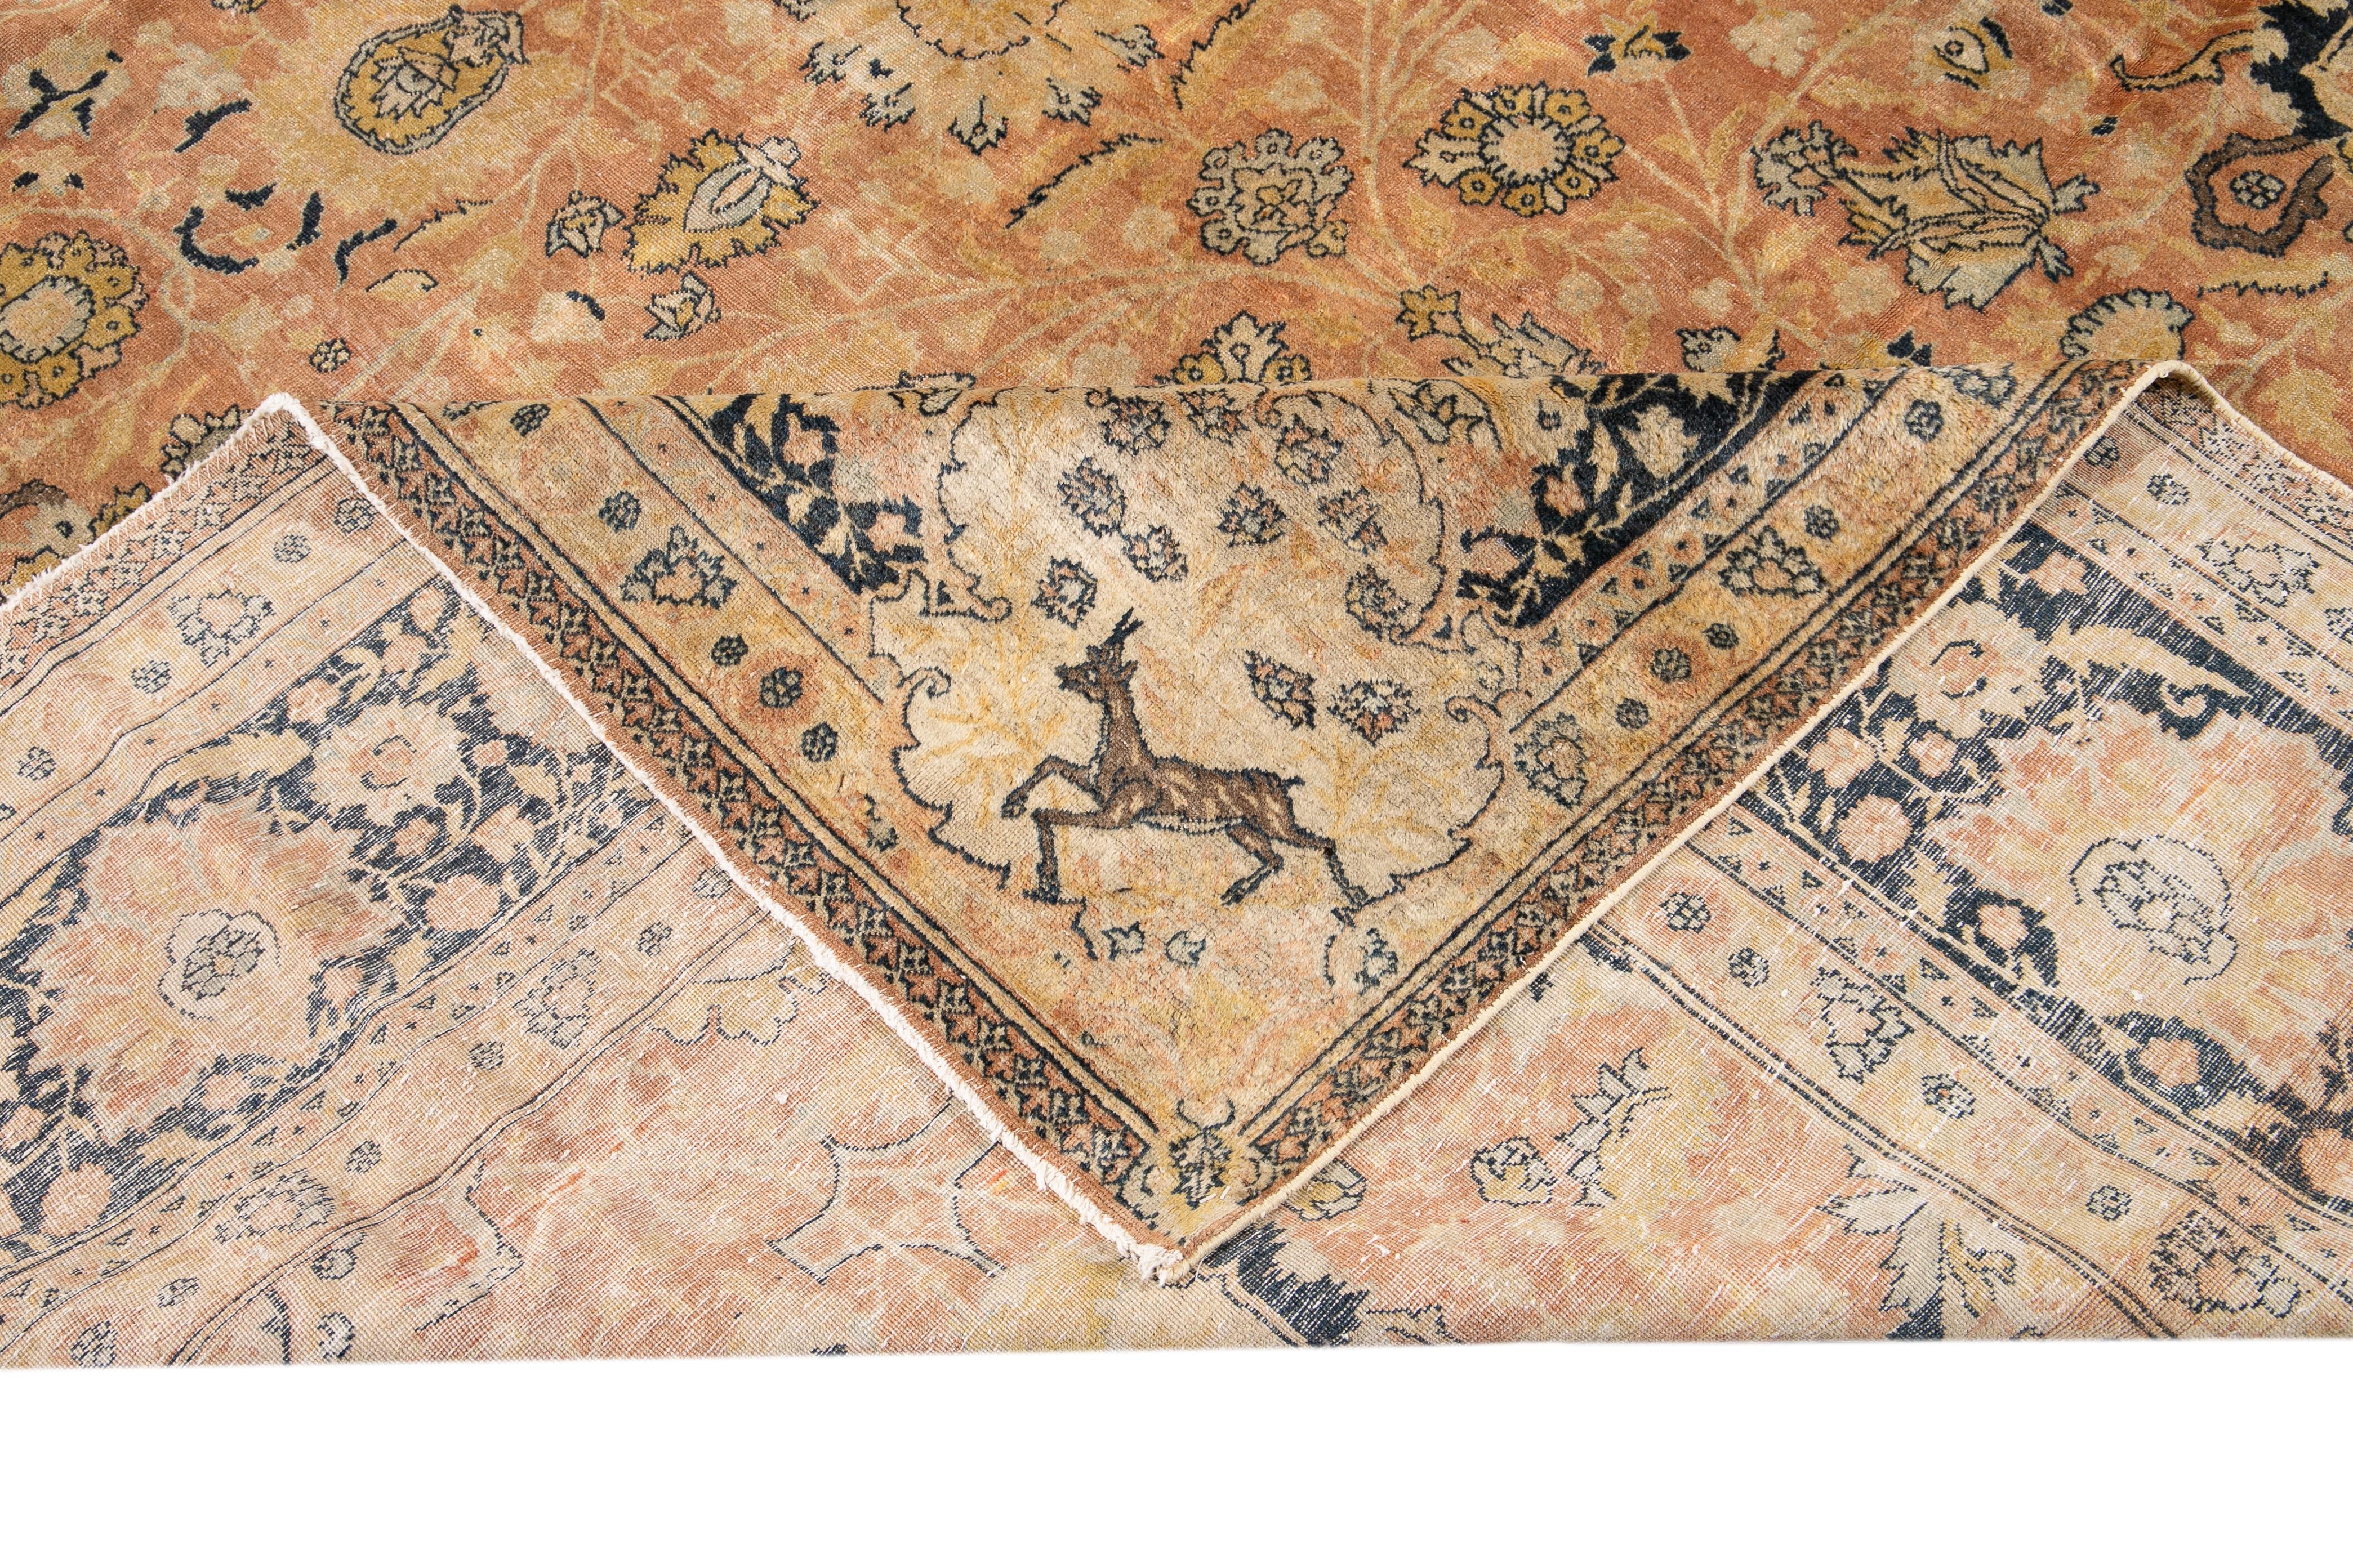 Schöner antiker, handgeknüpfter Agra-Wollteppich mit einem floralen Medaillonmuster auf einem pfirsichfarbenen Feld. Dieser indische Teppich hat Akzente in Braun, Blau und Gelb.

Dieser Teppich misst: 11'8